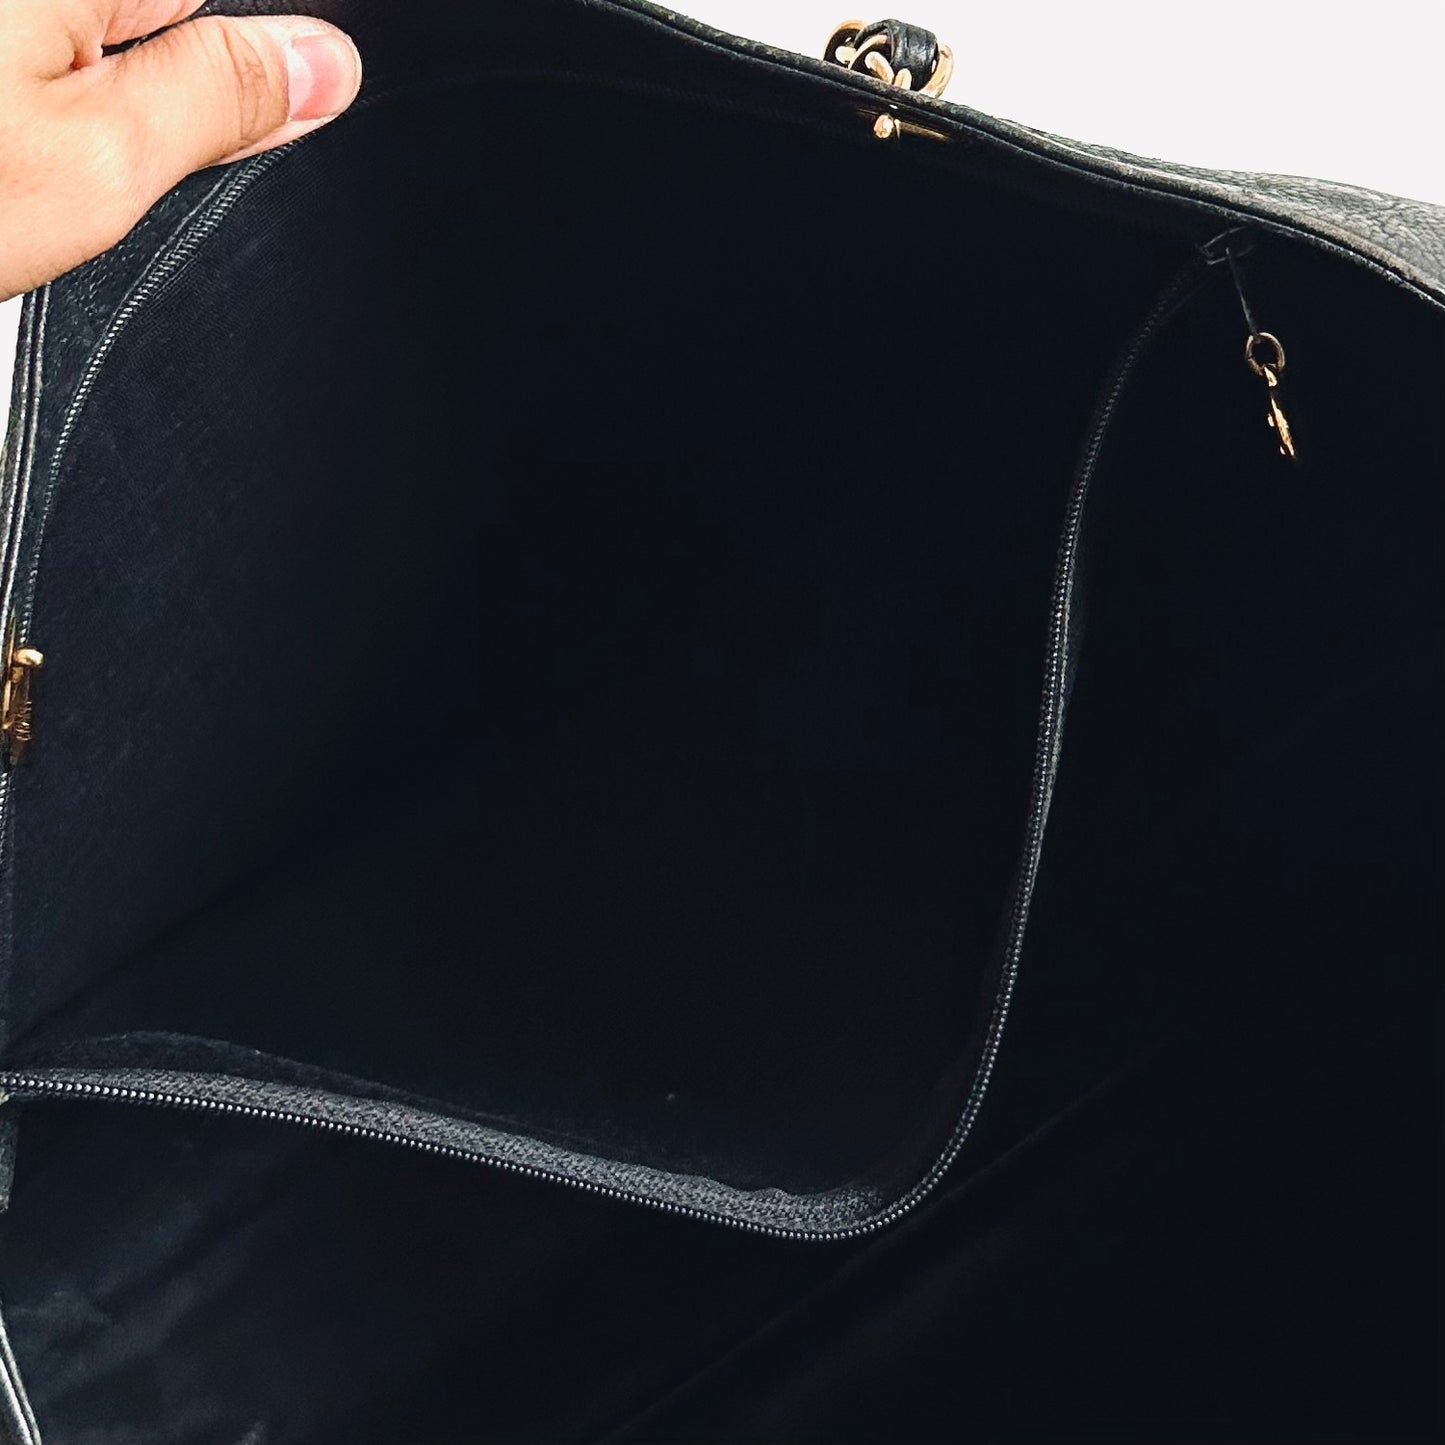 Chanel Black GHW Giant CC Logo Caviar Leather Vintage Shopper Shoulder Tote Bag